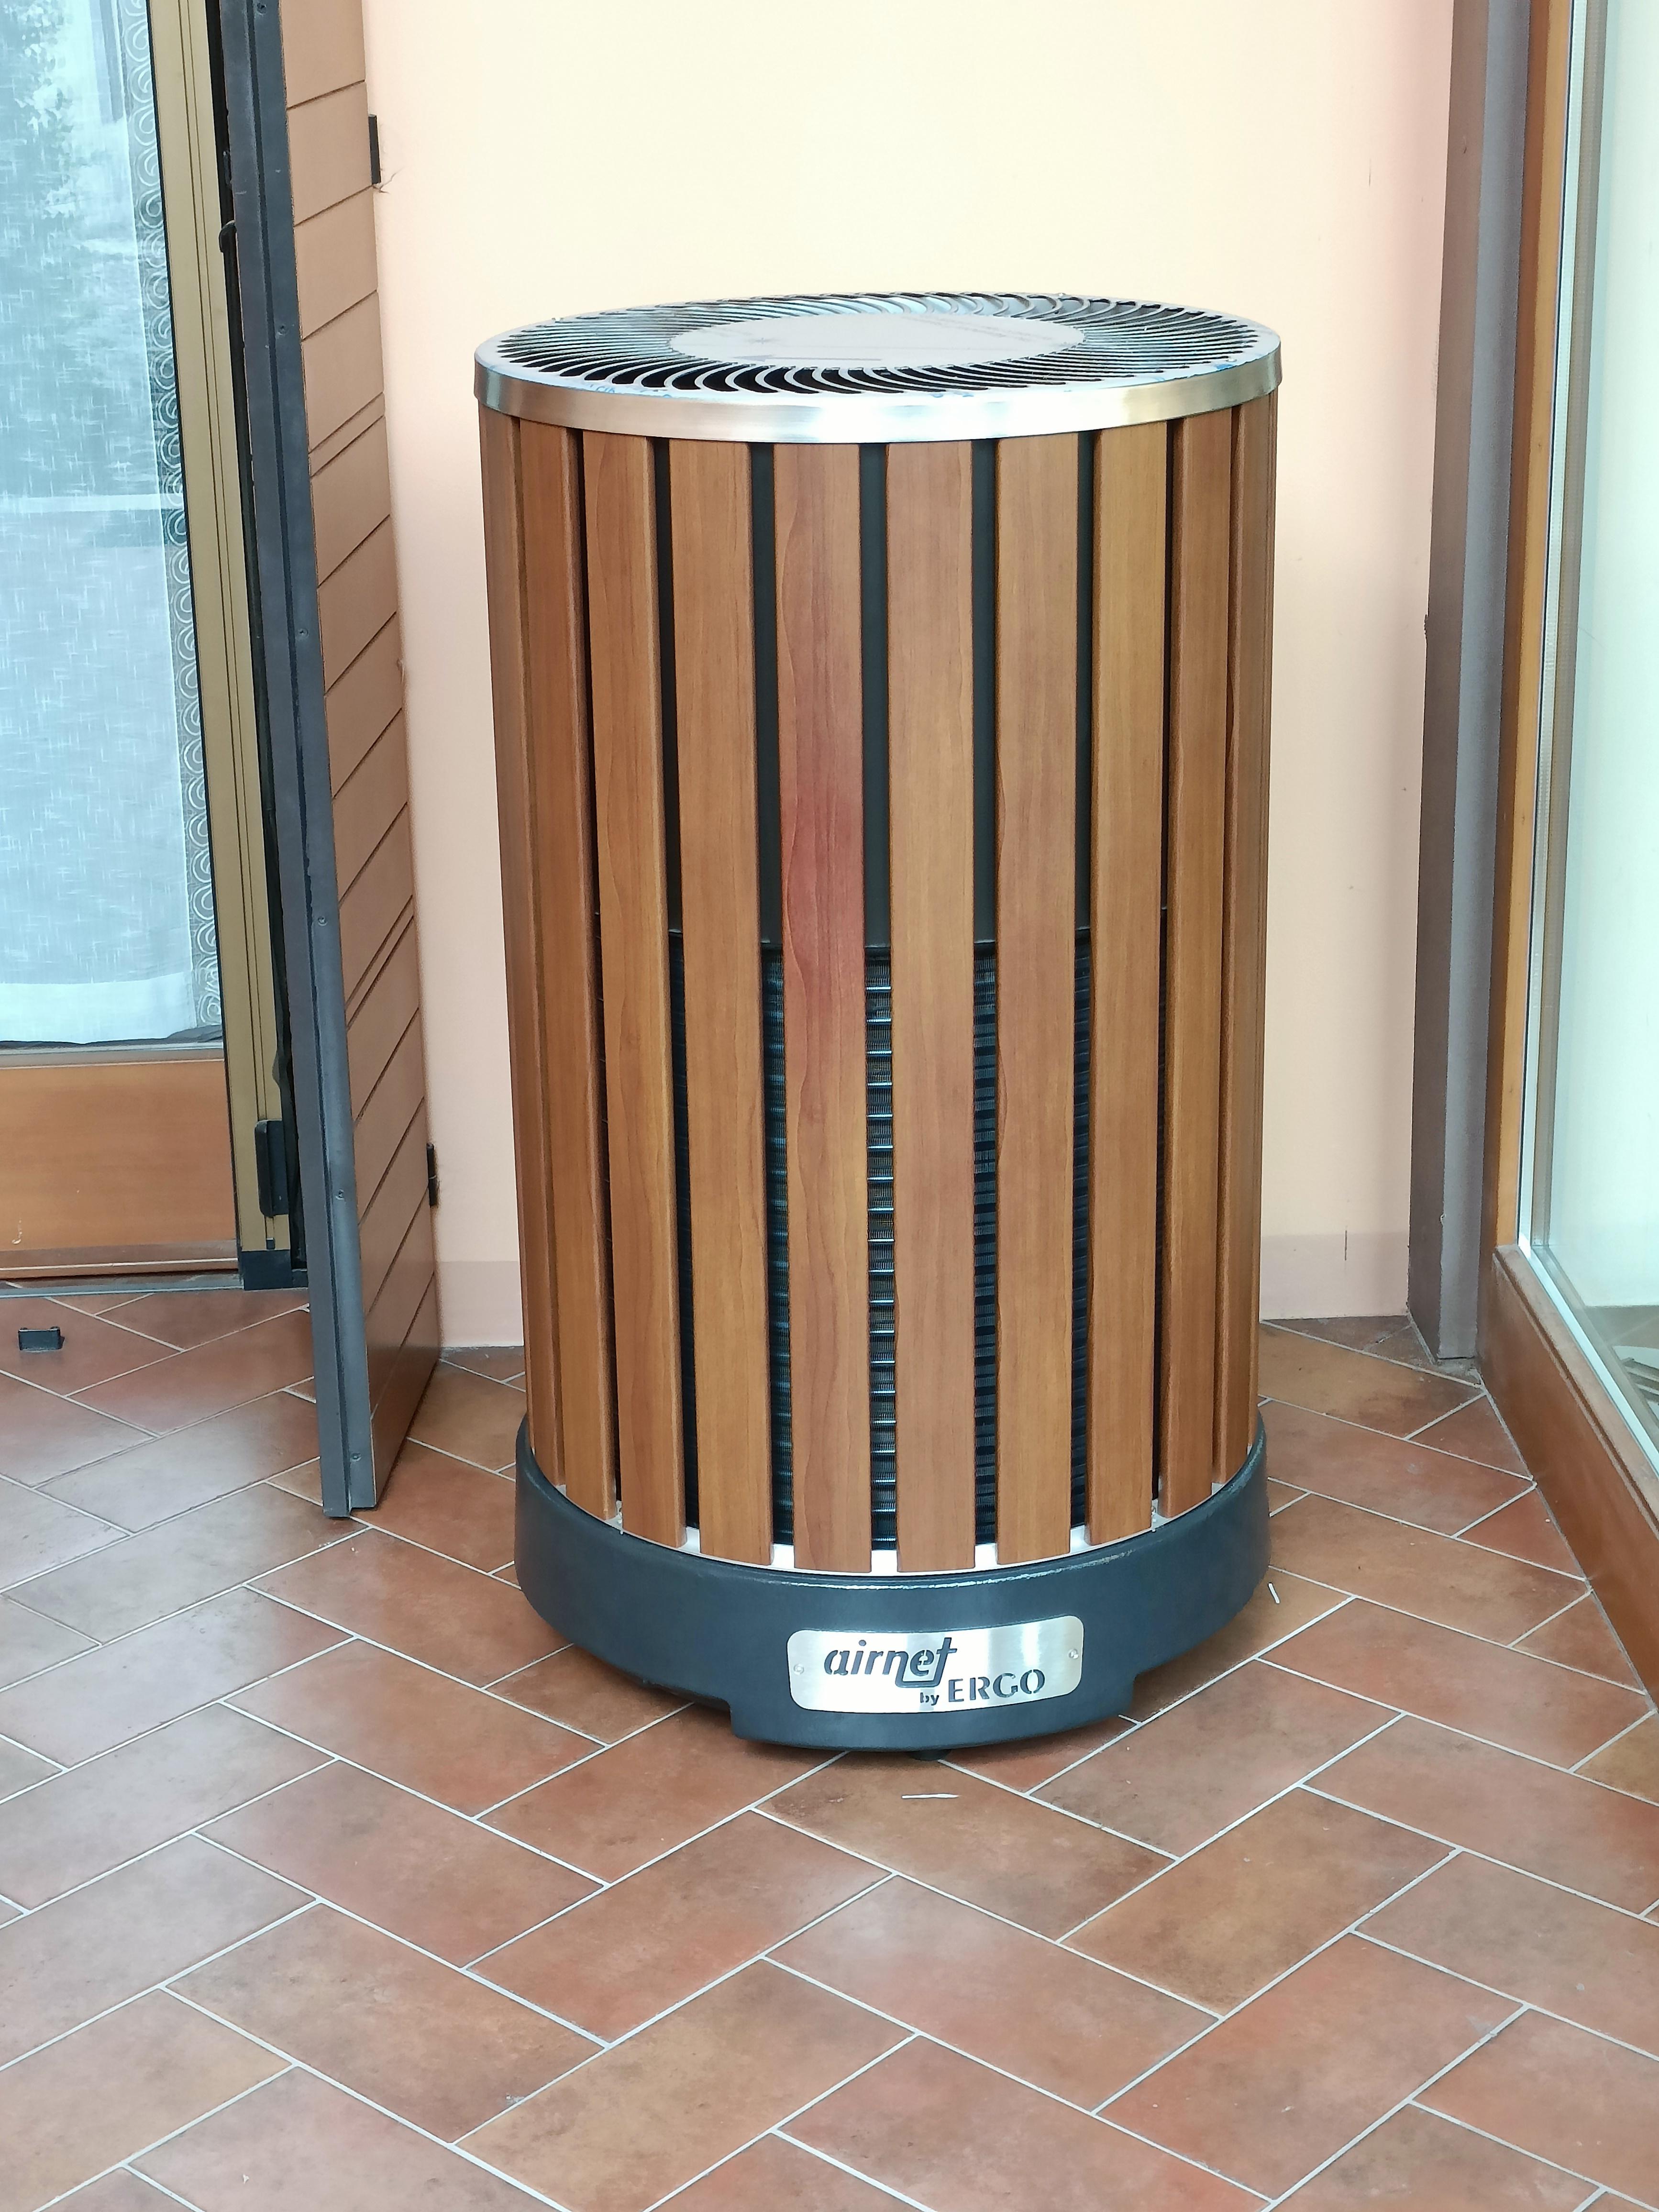 Pompa di calore Airnet By Ergo (Calcinato) realizzato da HF Impianti,  a Monza